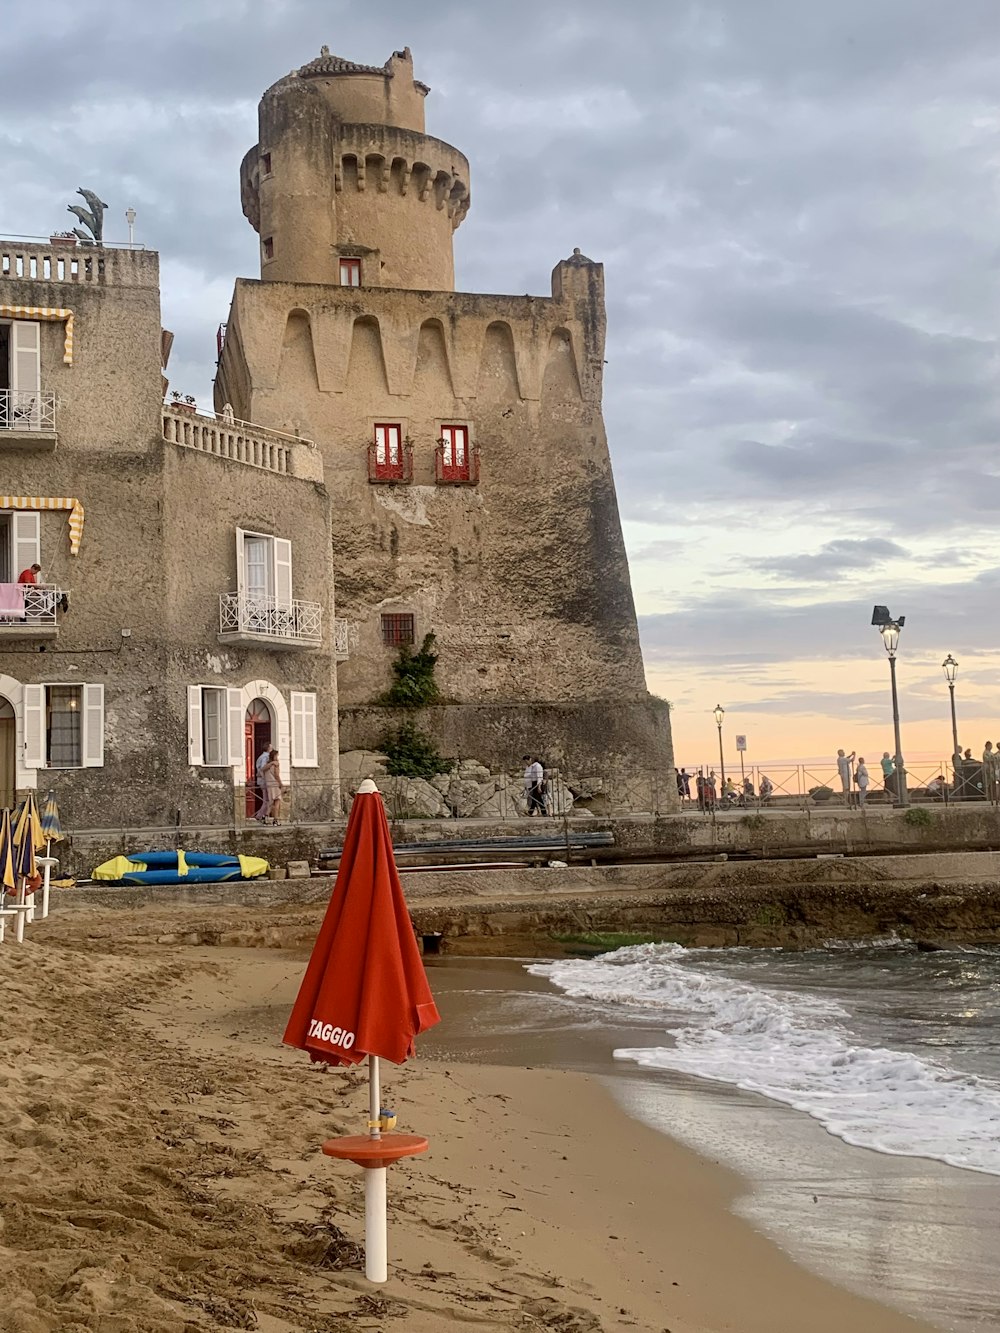 a castle on the beach